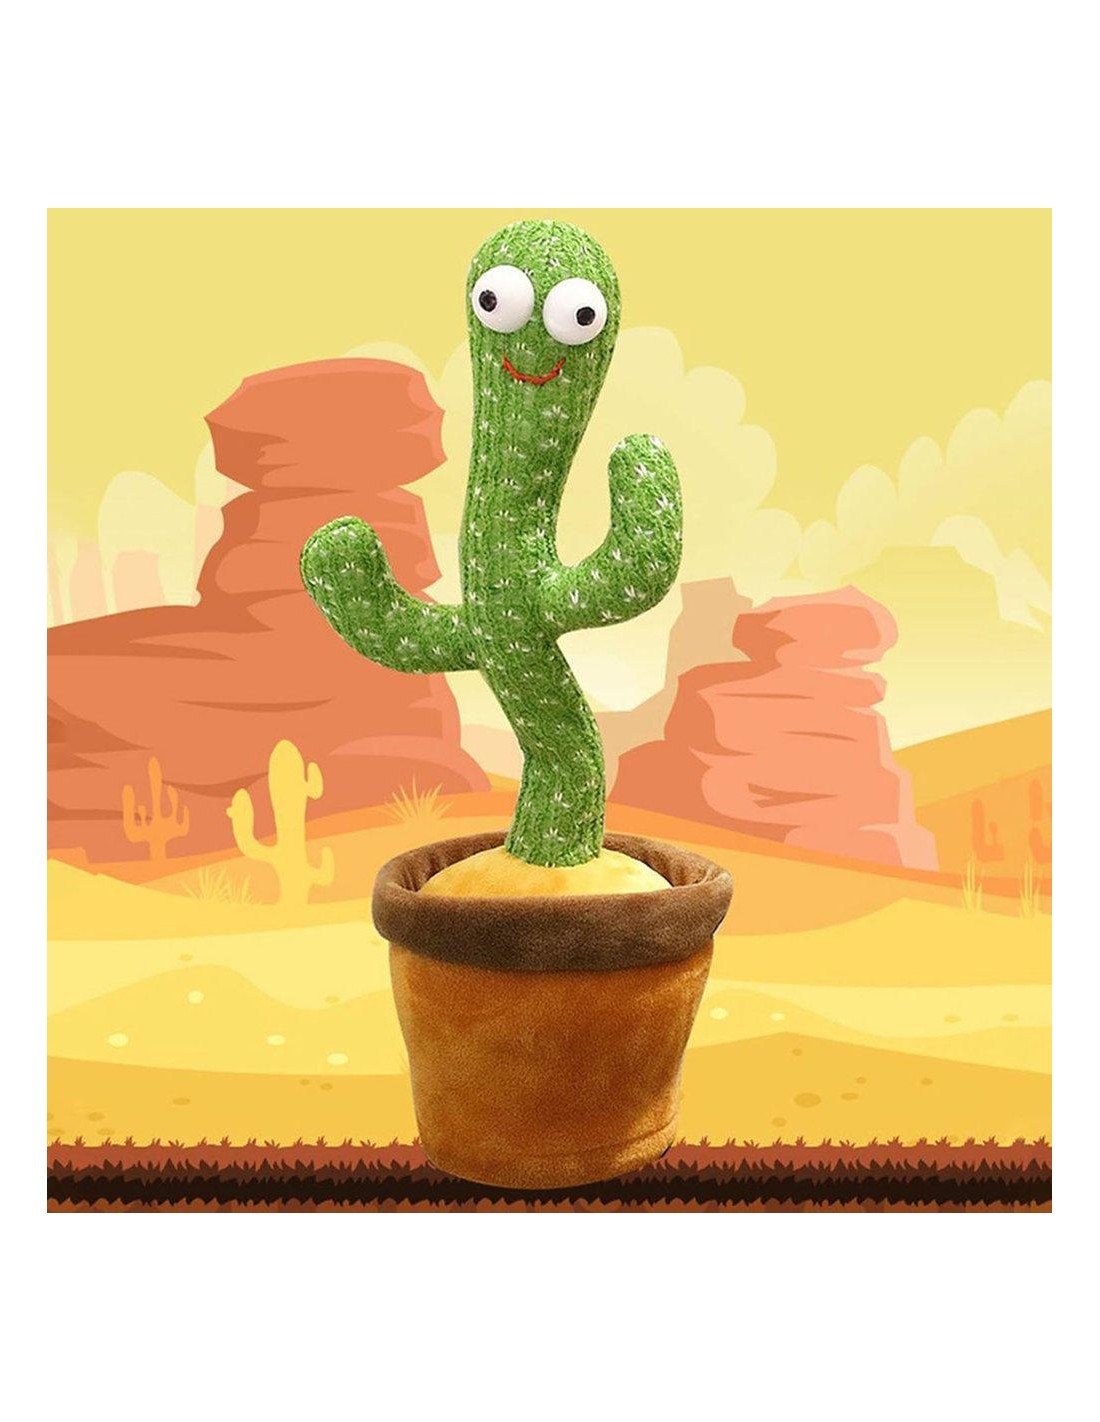 Cactus qui parle, danse et repete